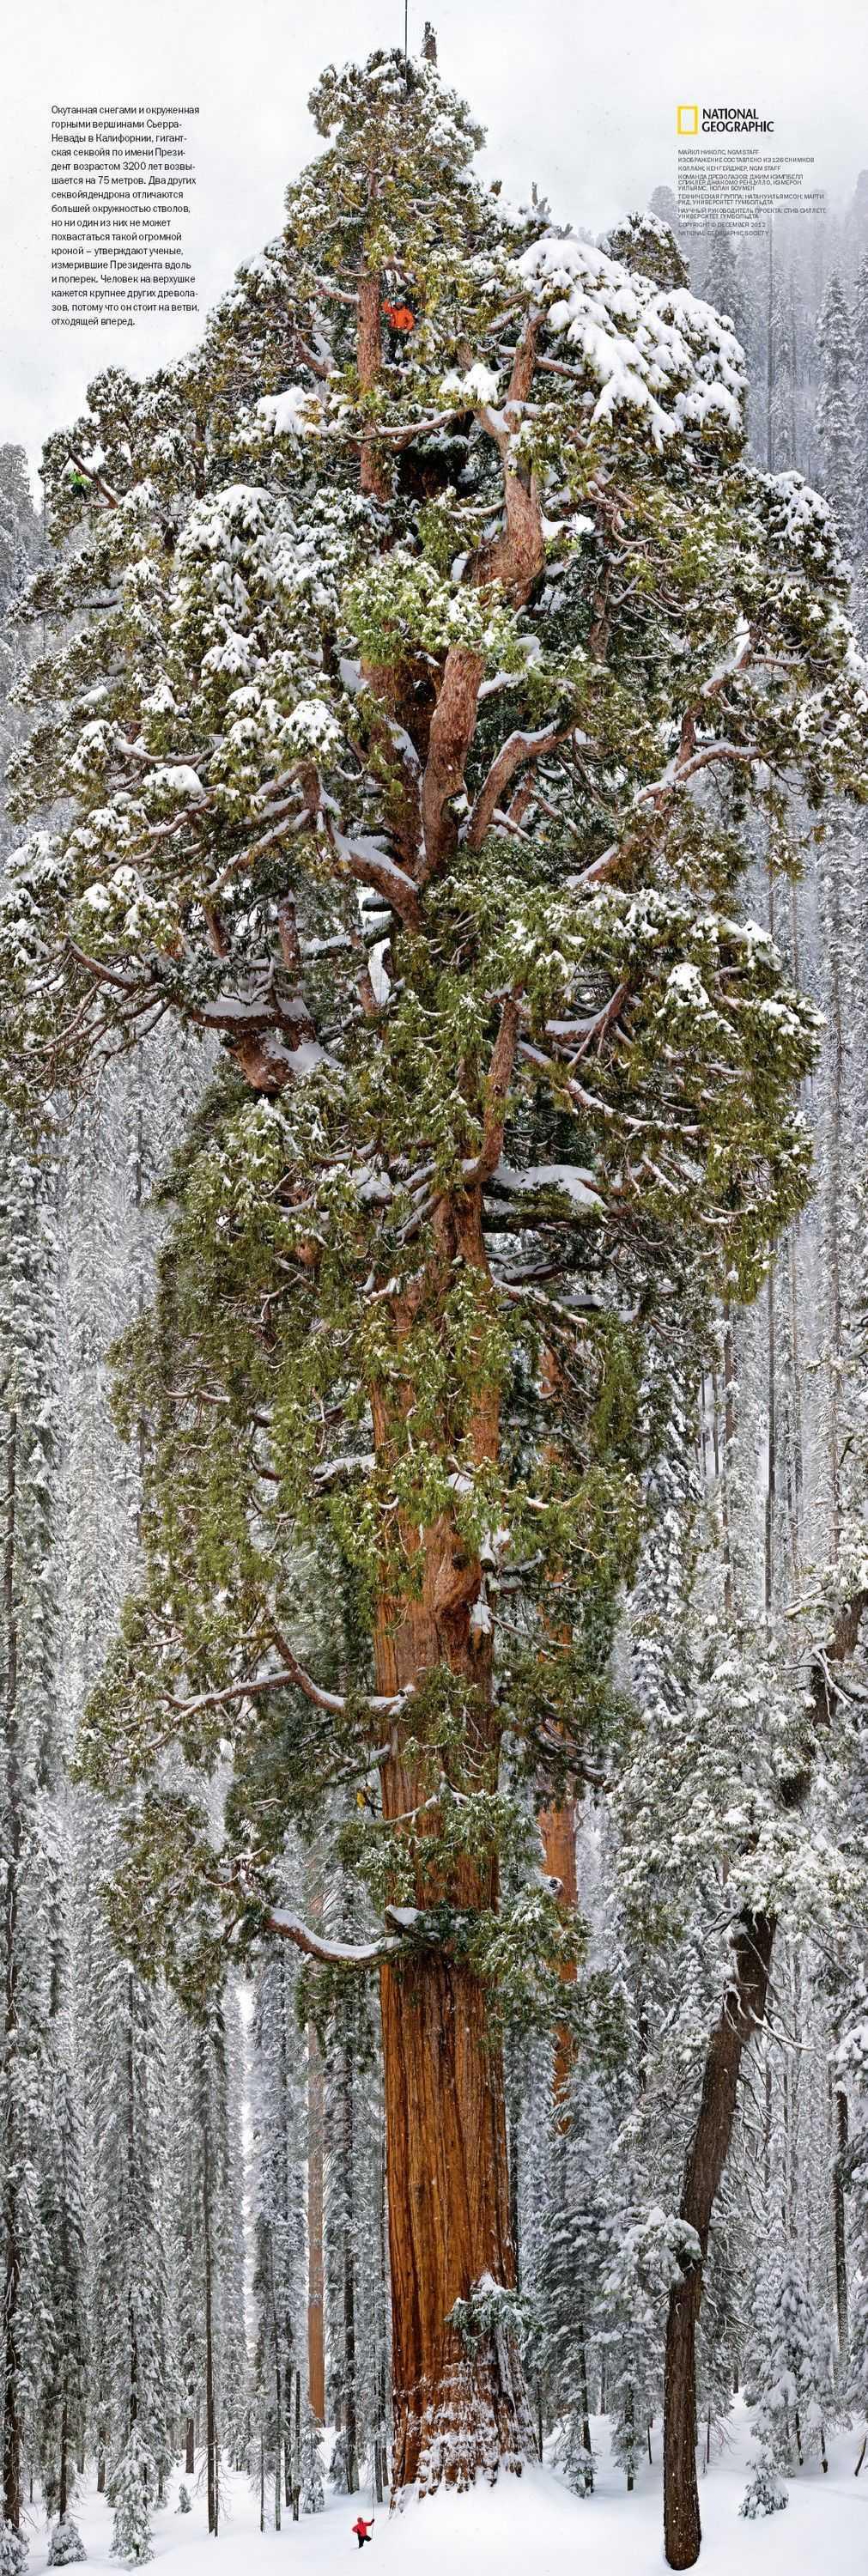 미국에 있는 3,200살 나무의 위엄